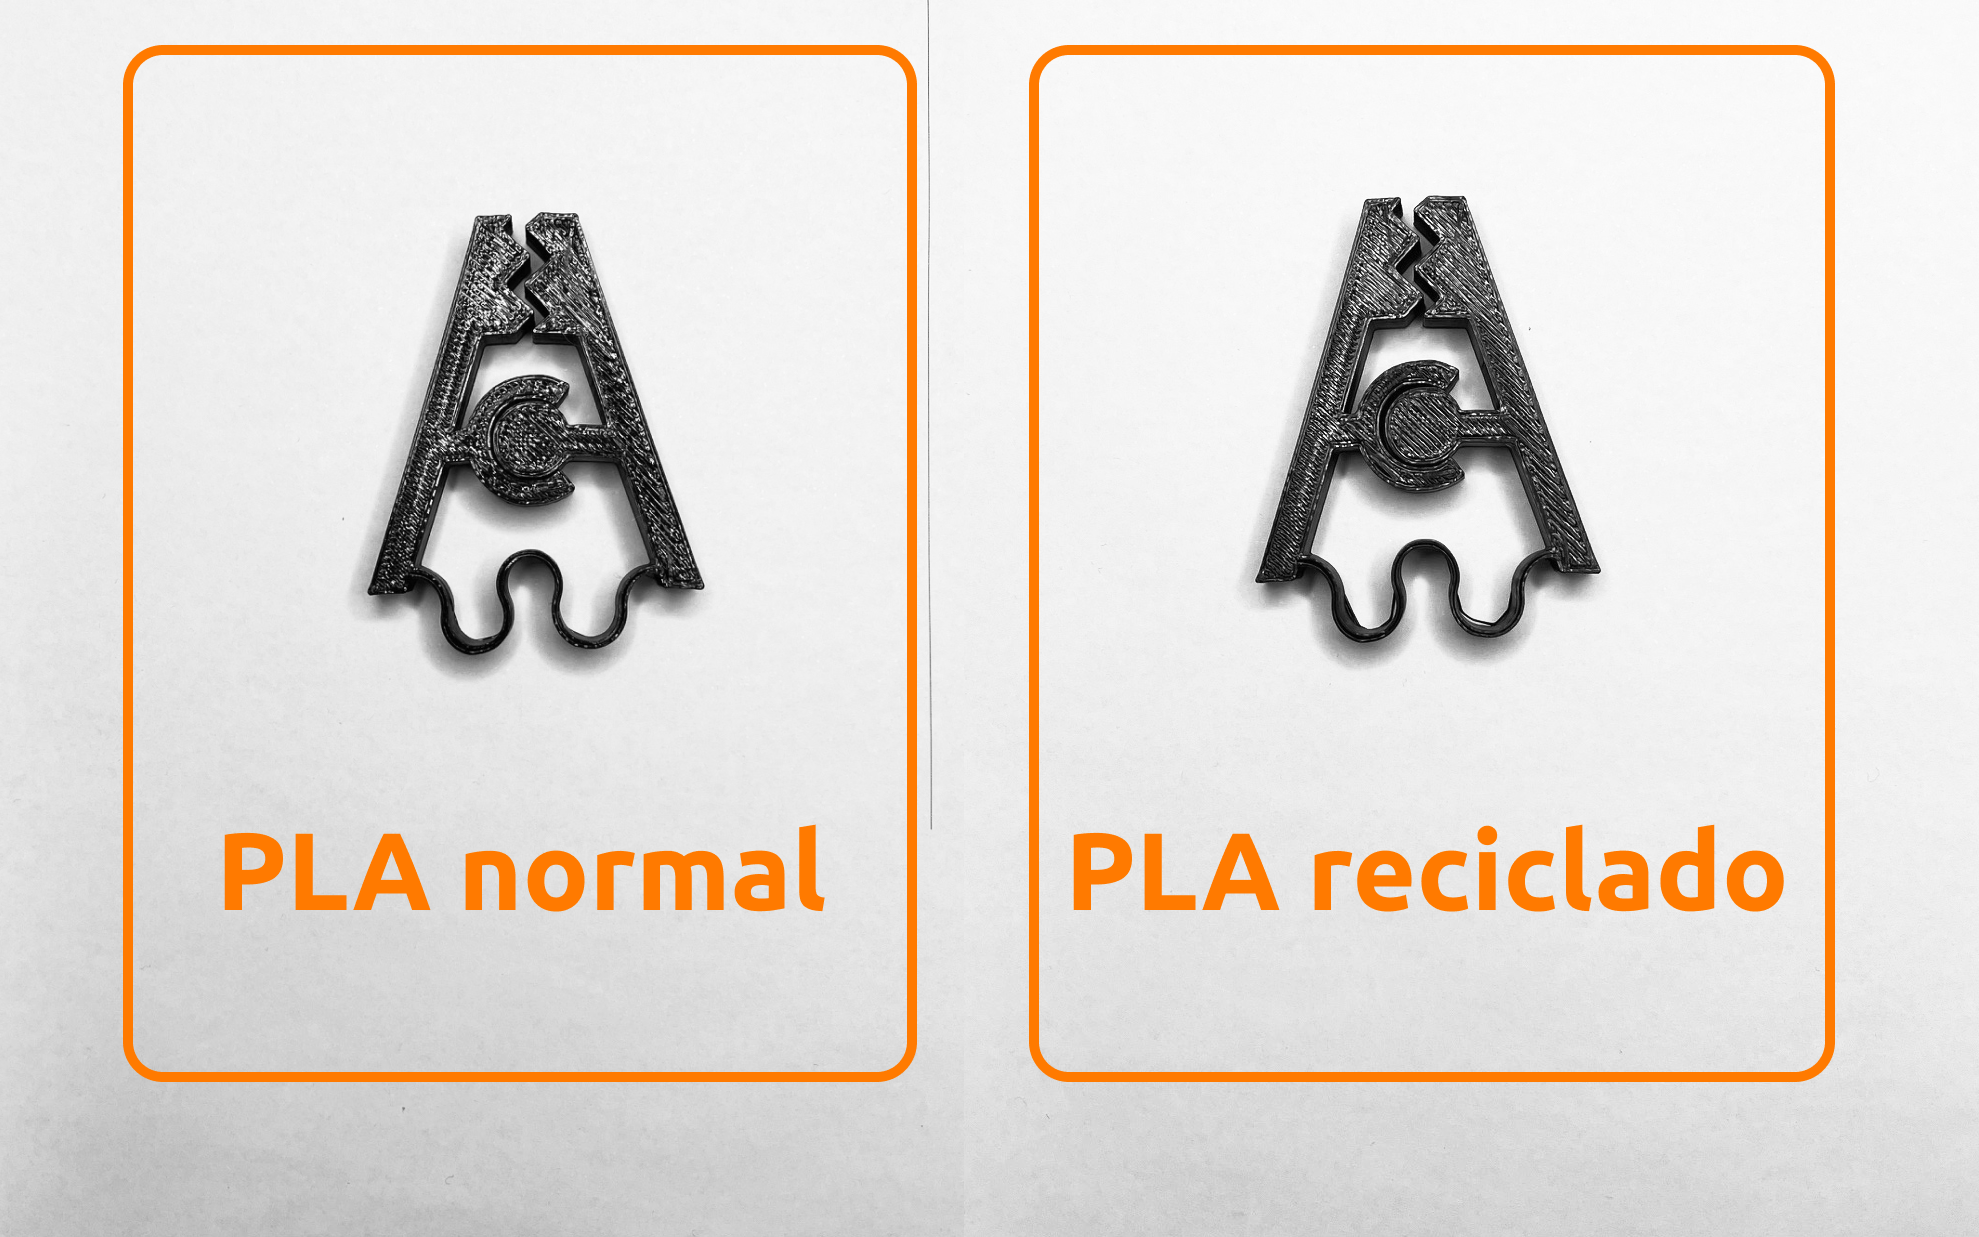 Comparación entre filamento PLA reciclado y normal para pruebas de resistencia a flexión